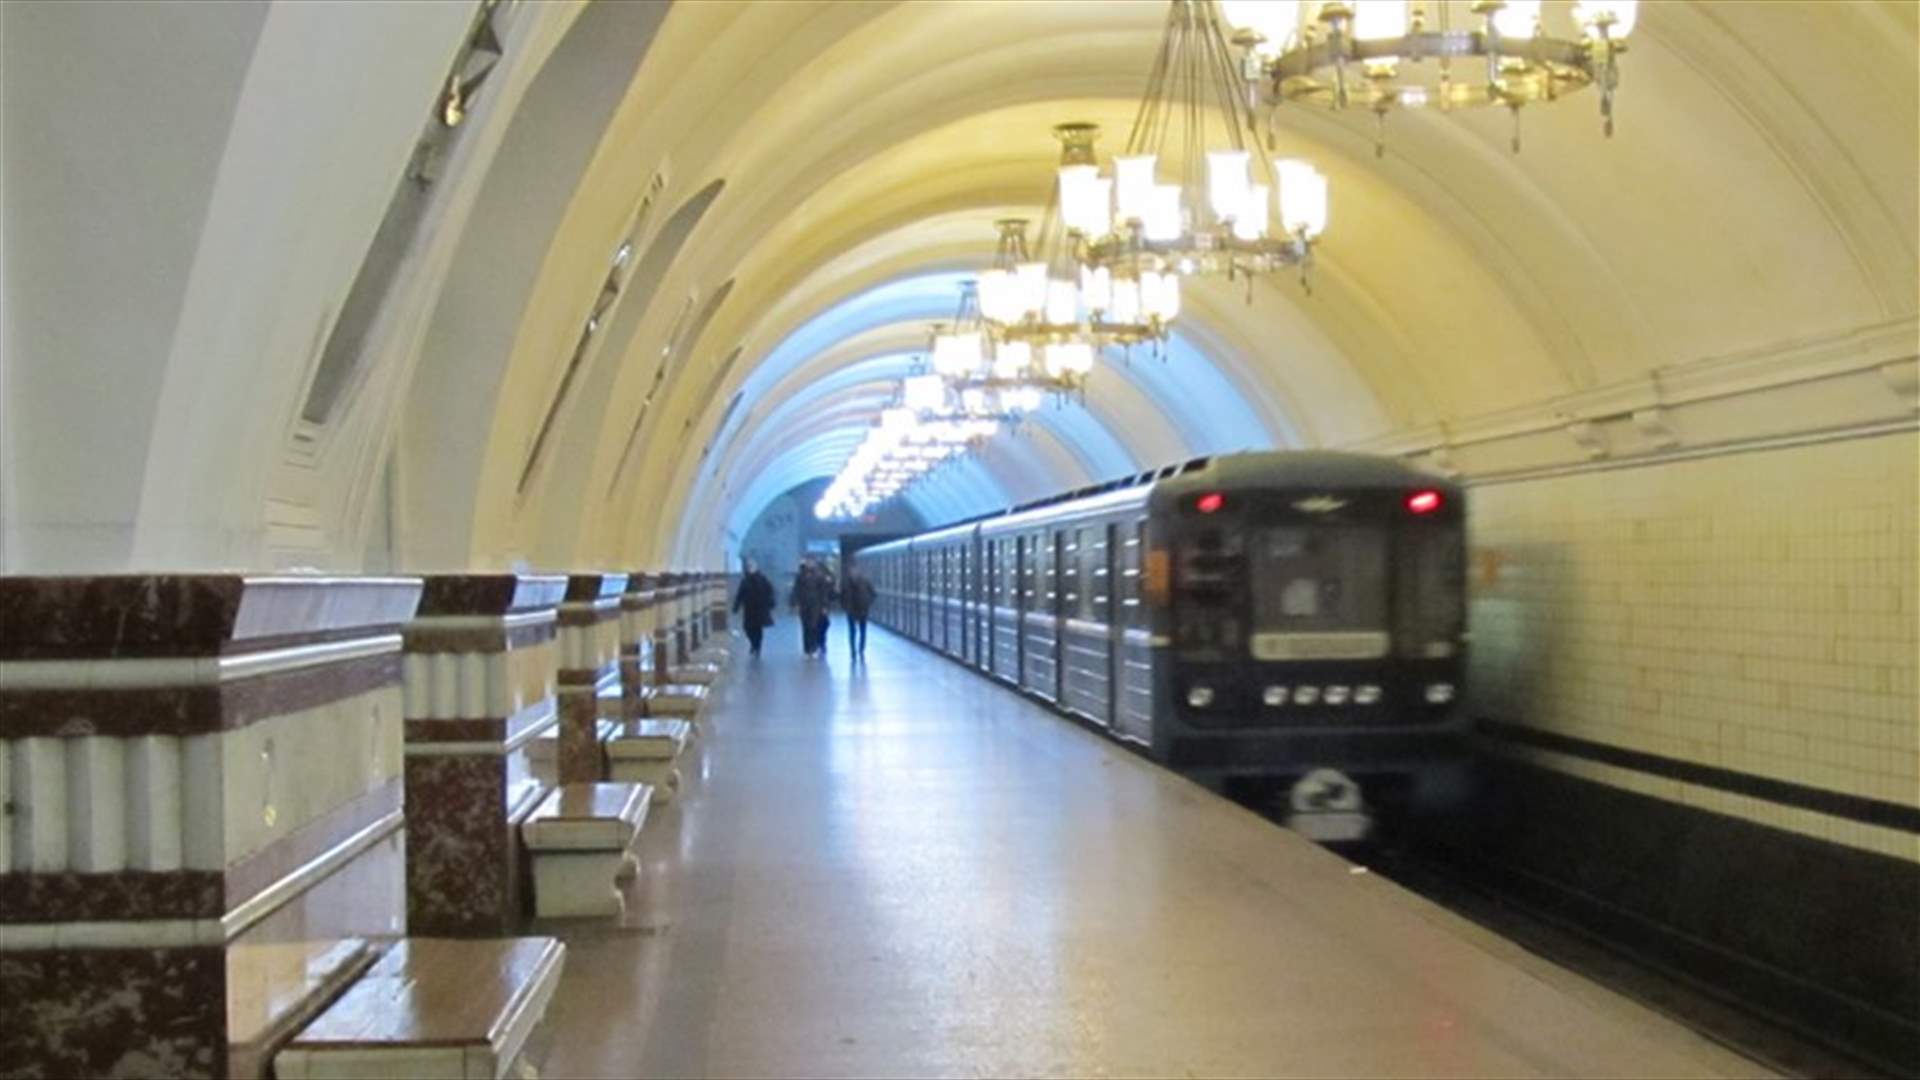 تهديد بقنبلة في موسكو... واخلاء 3 محطات قطارات